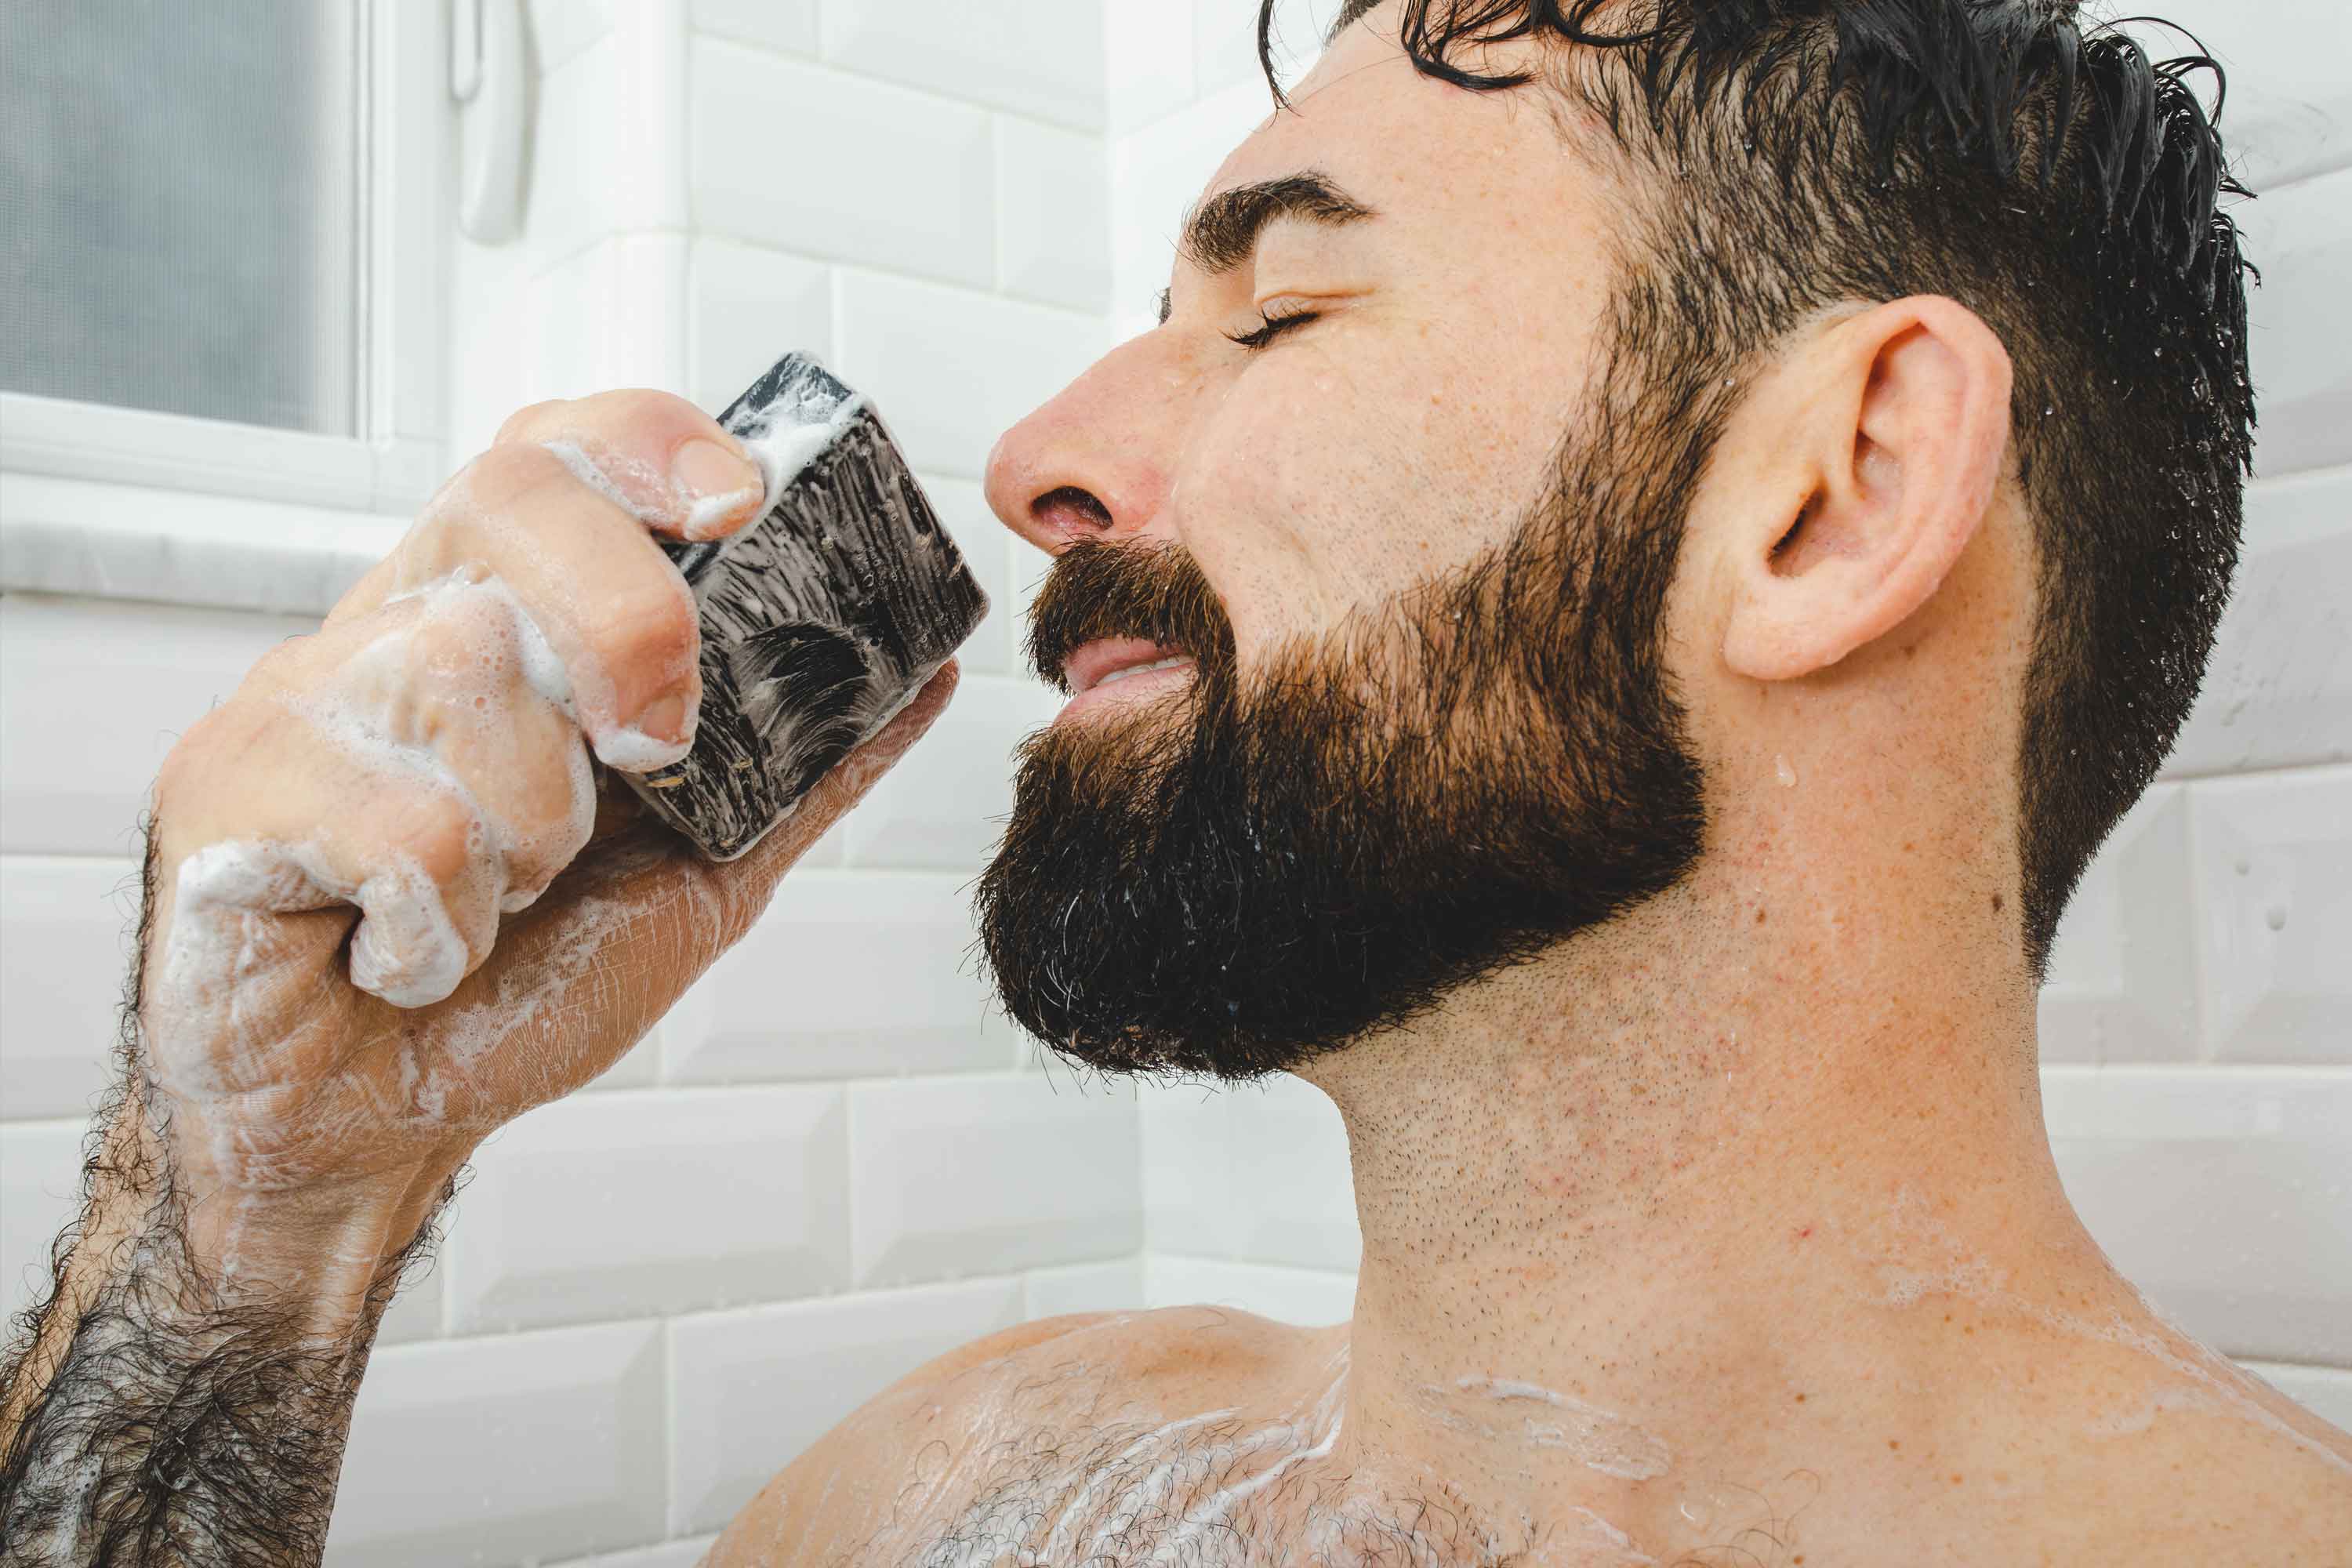 Dr. Squatch® All-Natural Bar Soap For Men